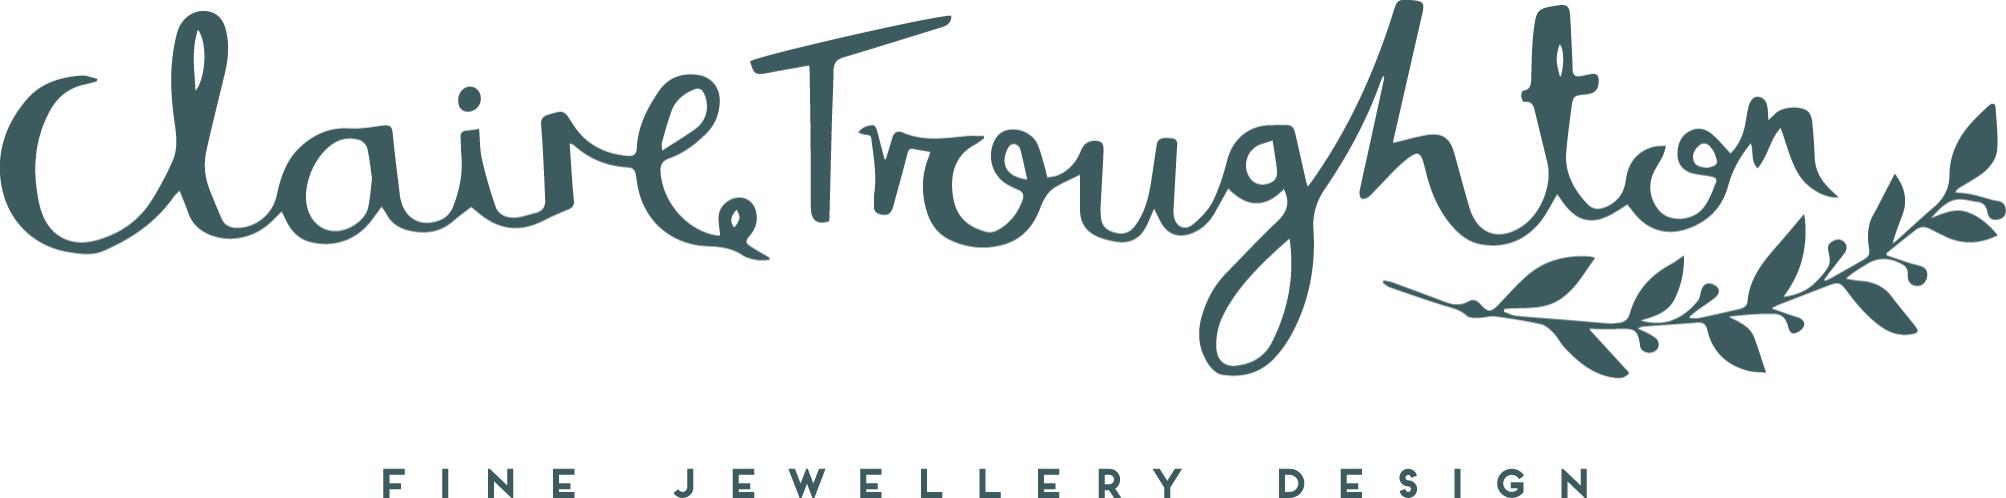 Claire Troughton Jewellery